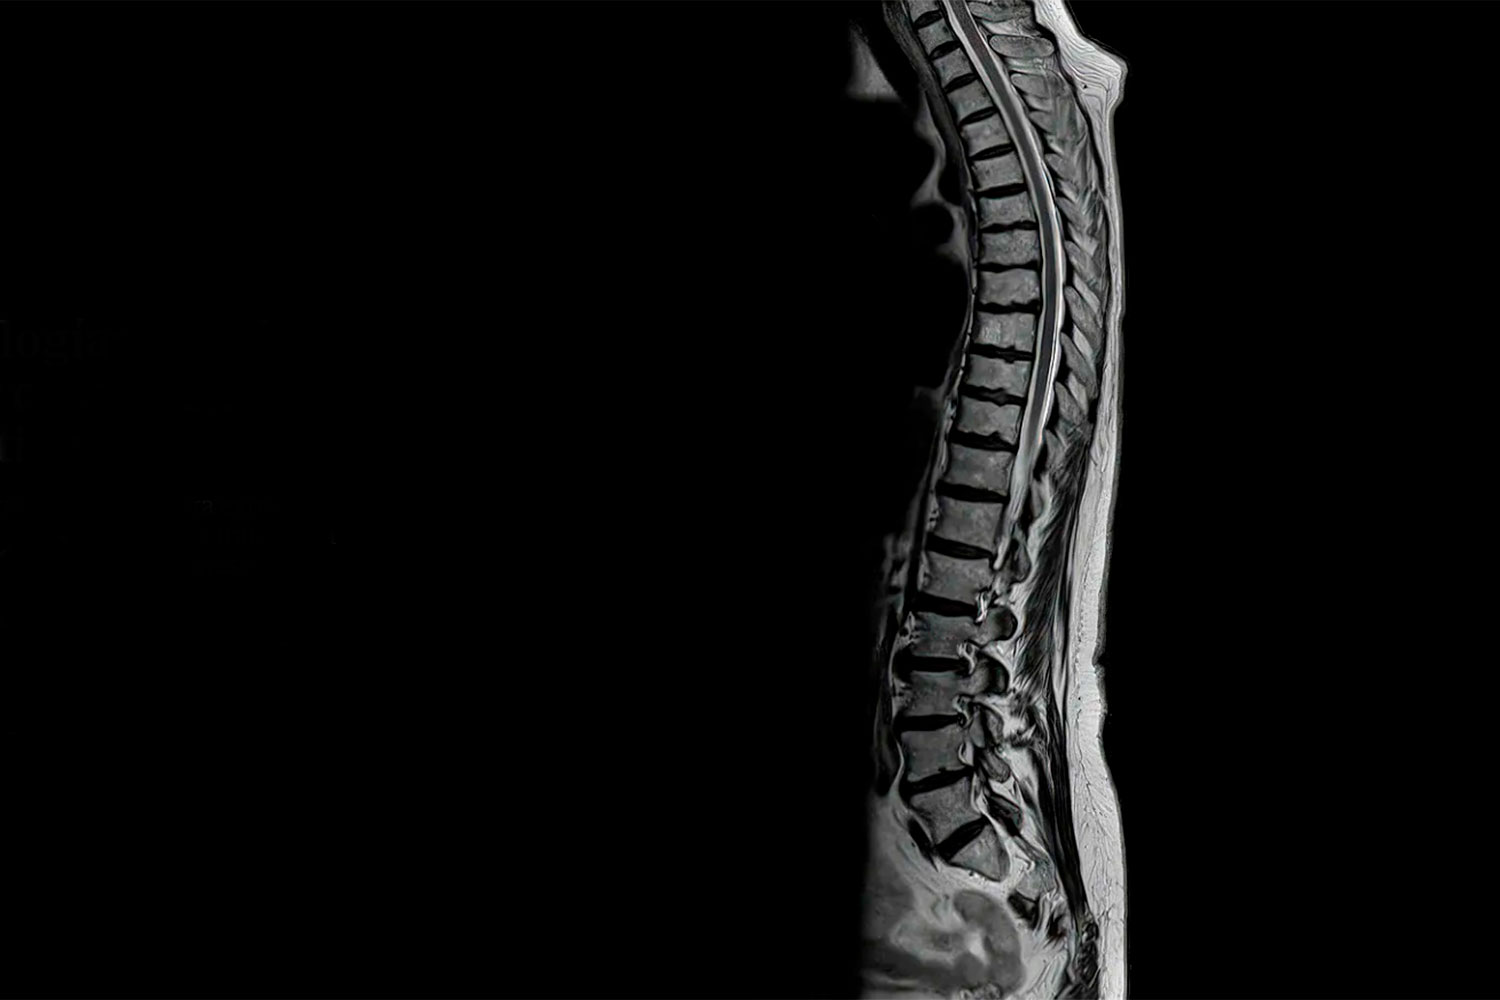 Corte sagital de la espina dorsal completa, obtenida solo en un minuto y 22 segundos. Foto: SIEMENS HEALTHINEERS 